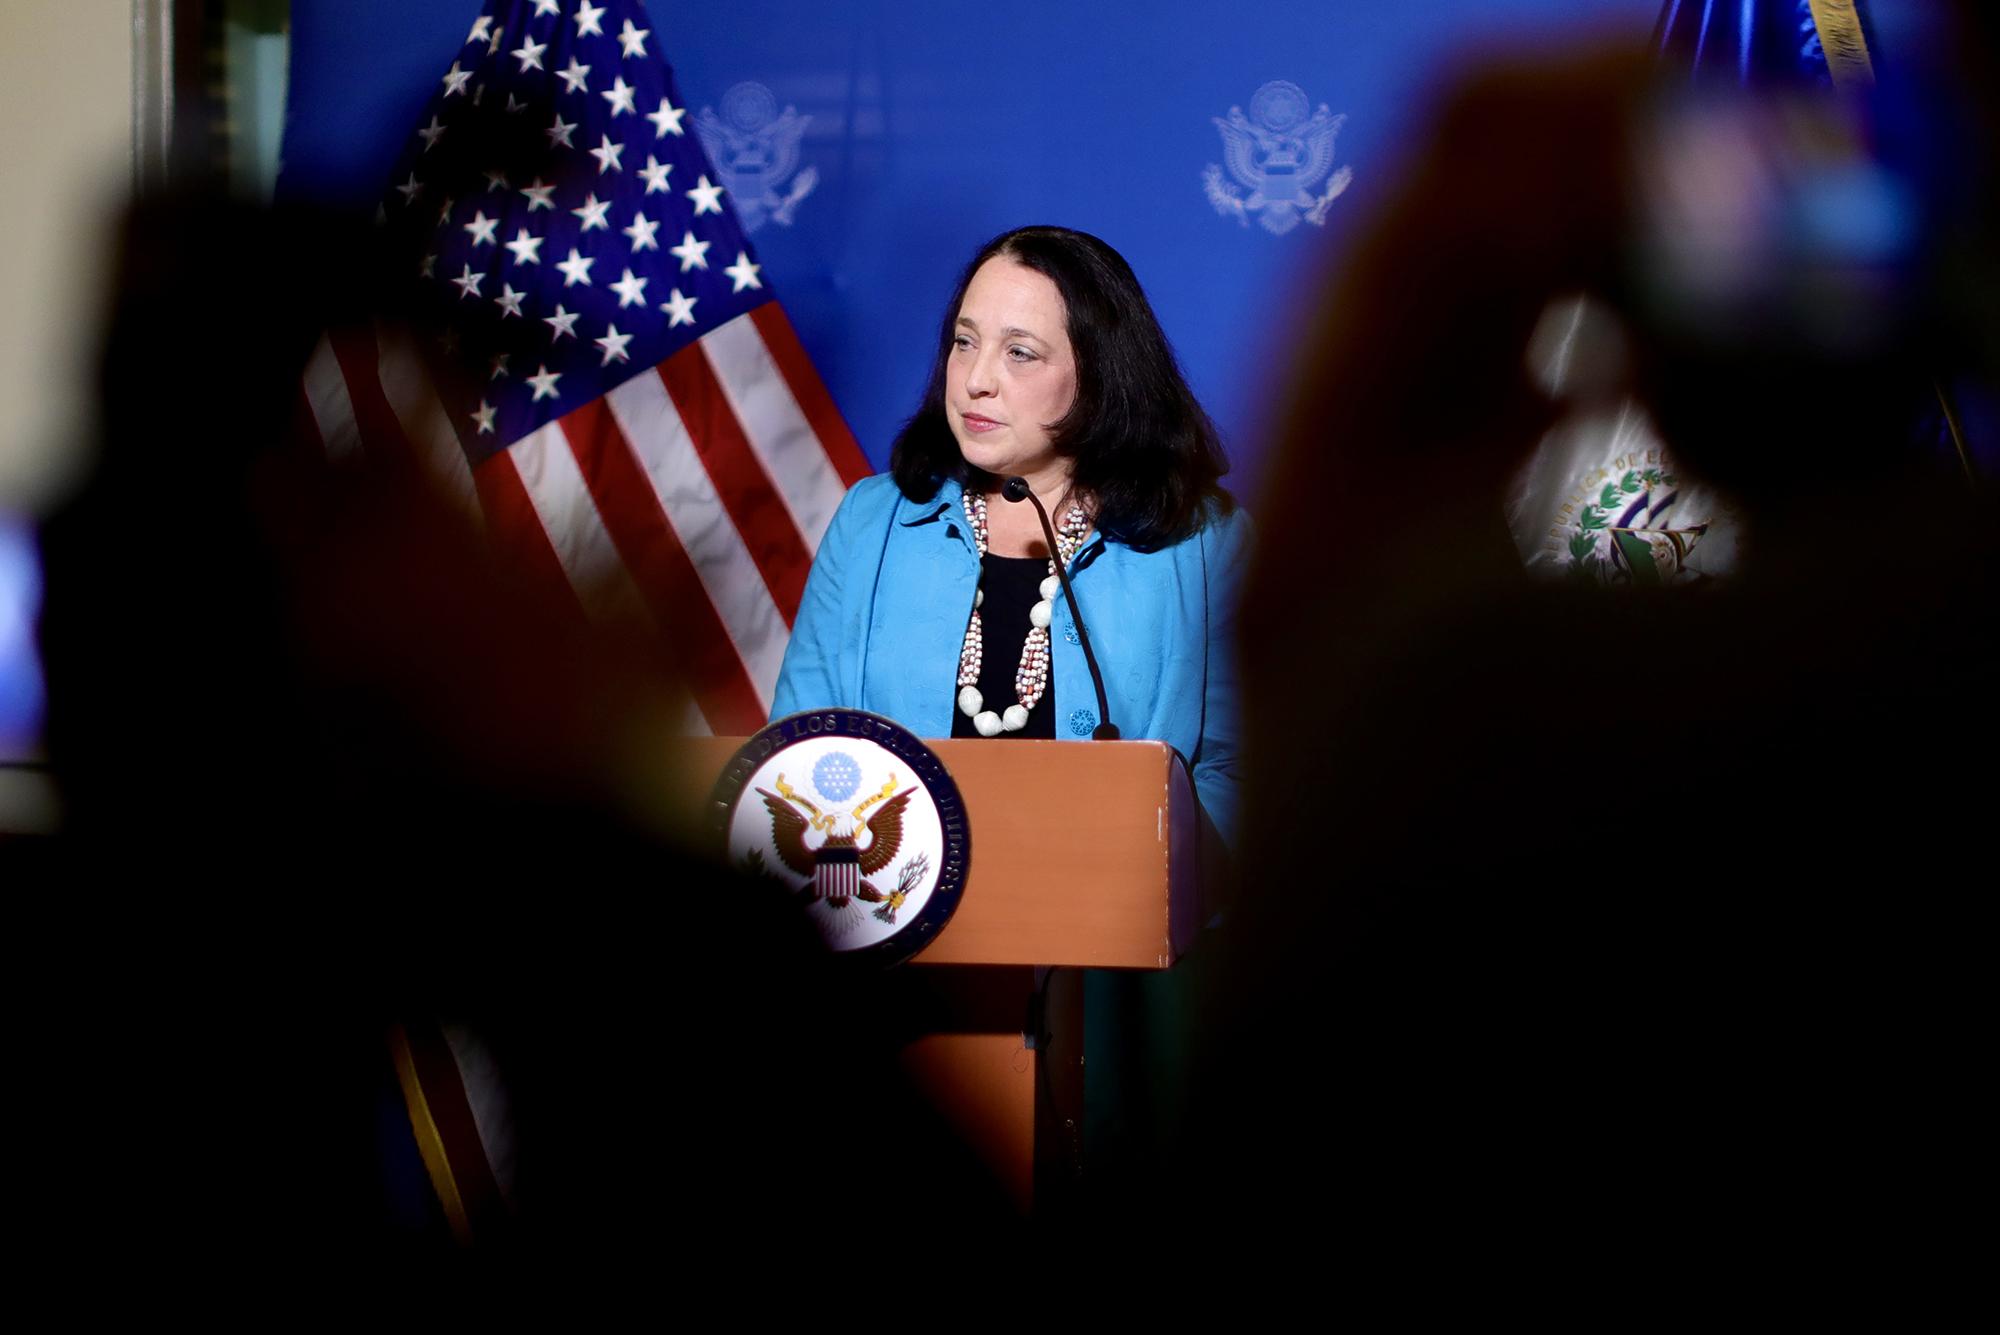 La encargada de negocios interina de la Embajada de Estados Unidos en El Salvador durante su conferencia de prensa la noche del 4 de septiembre de 2021. Foto de El Faro: Embajada de Estados Unidos.